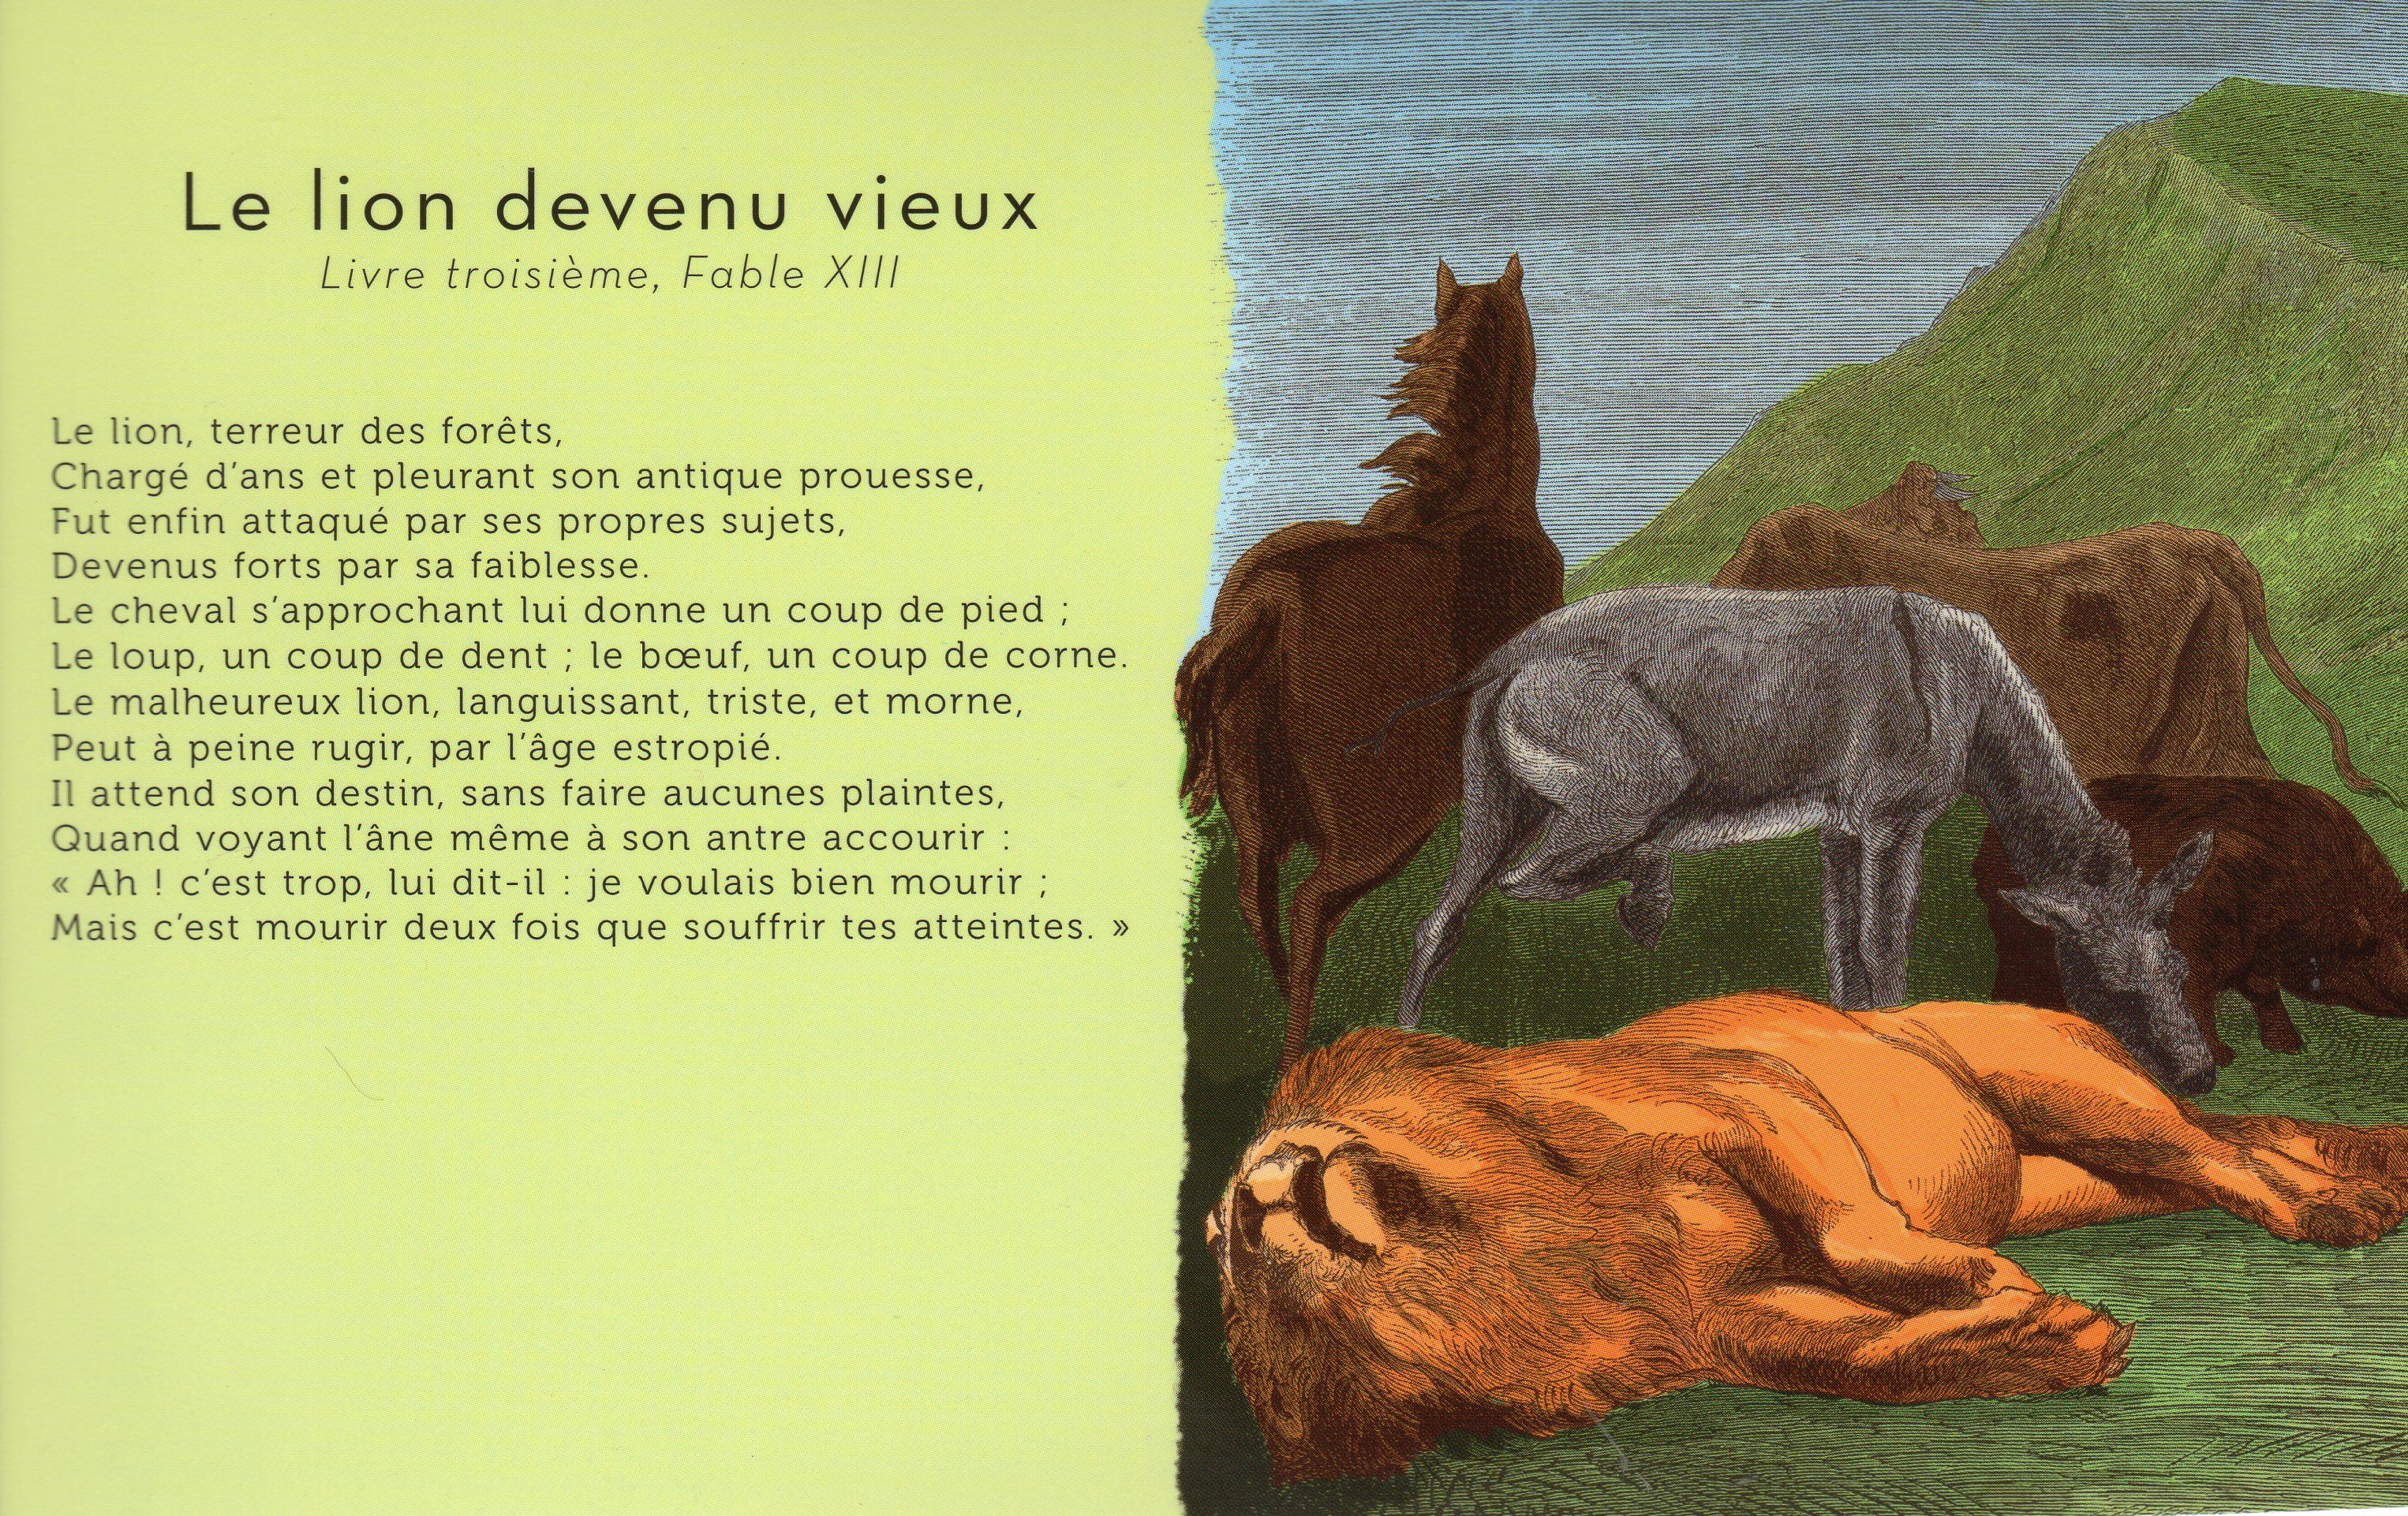 "Le lion devenu vieux" Jean de La Fontaine+"Il faut du temps" Delphine JOUVE Df93c714